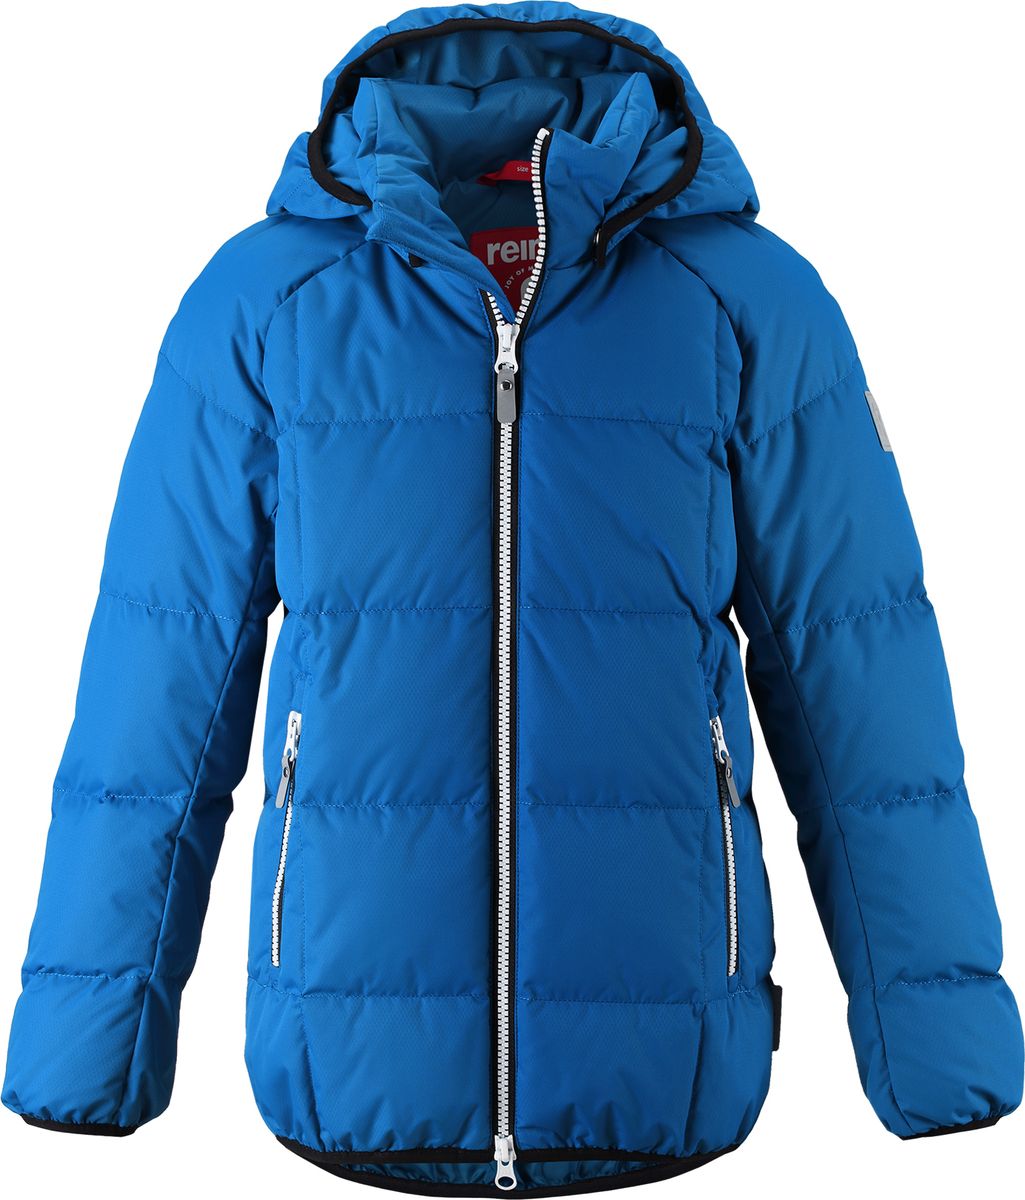 Куртка для мальчика Reima Jord, цвет: синий. 5313596680. Размер 116